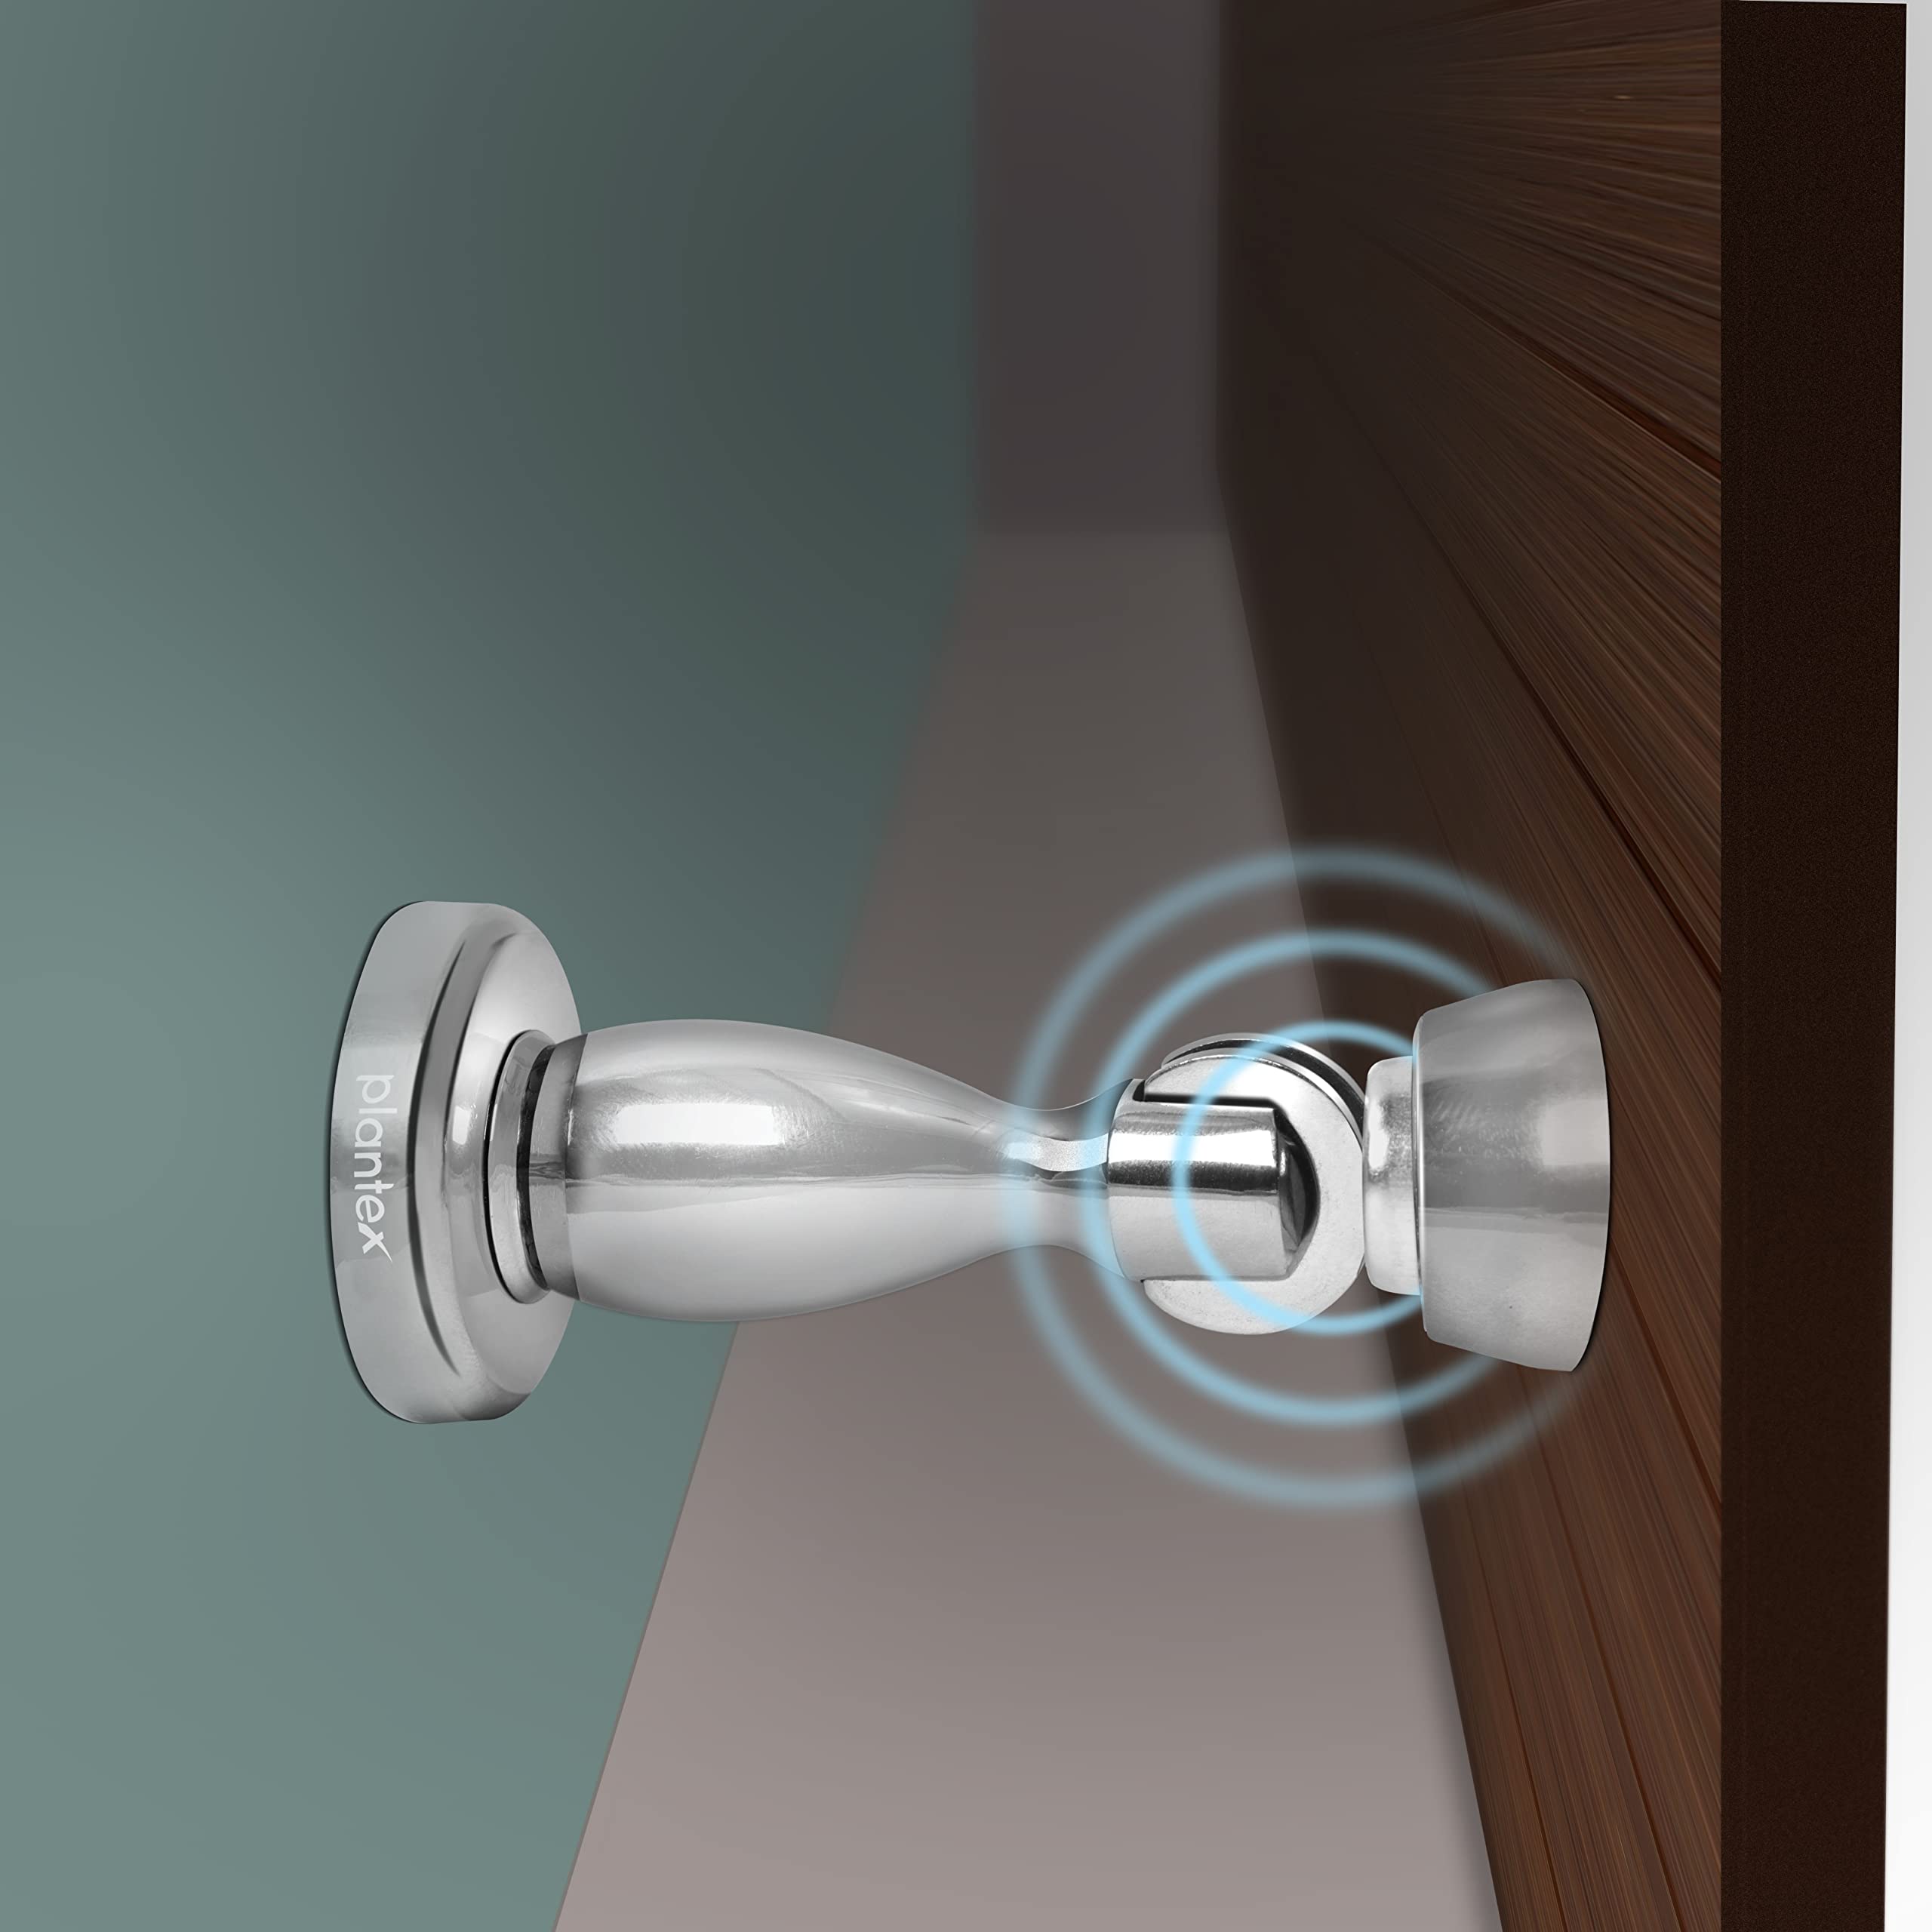 Plantex Magnetic Door Stopper for Home/ 360 Degree Magnet Door Catcher/Door Holder for Main Door/Bedroom/Office and Hotel Door - Pack of 40 (4 inch, Chrome)